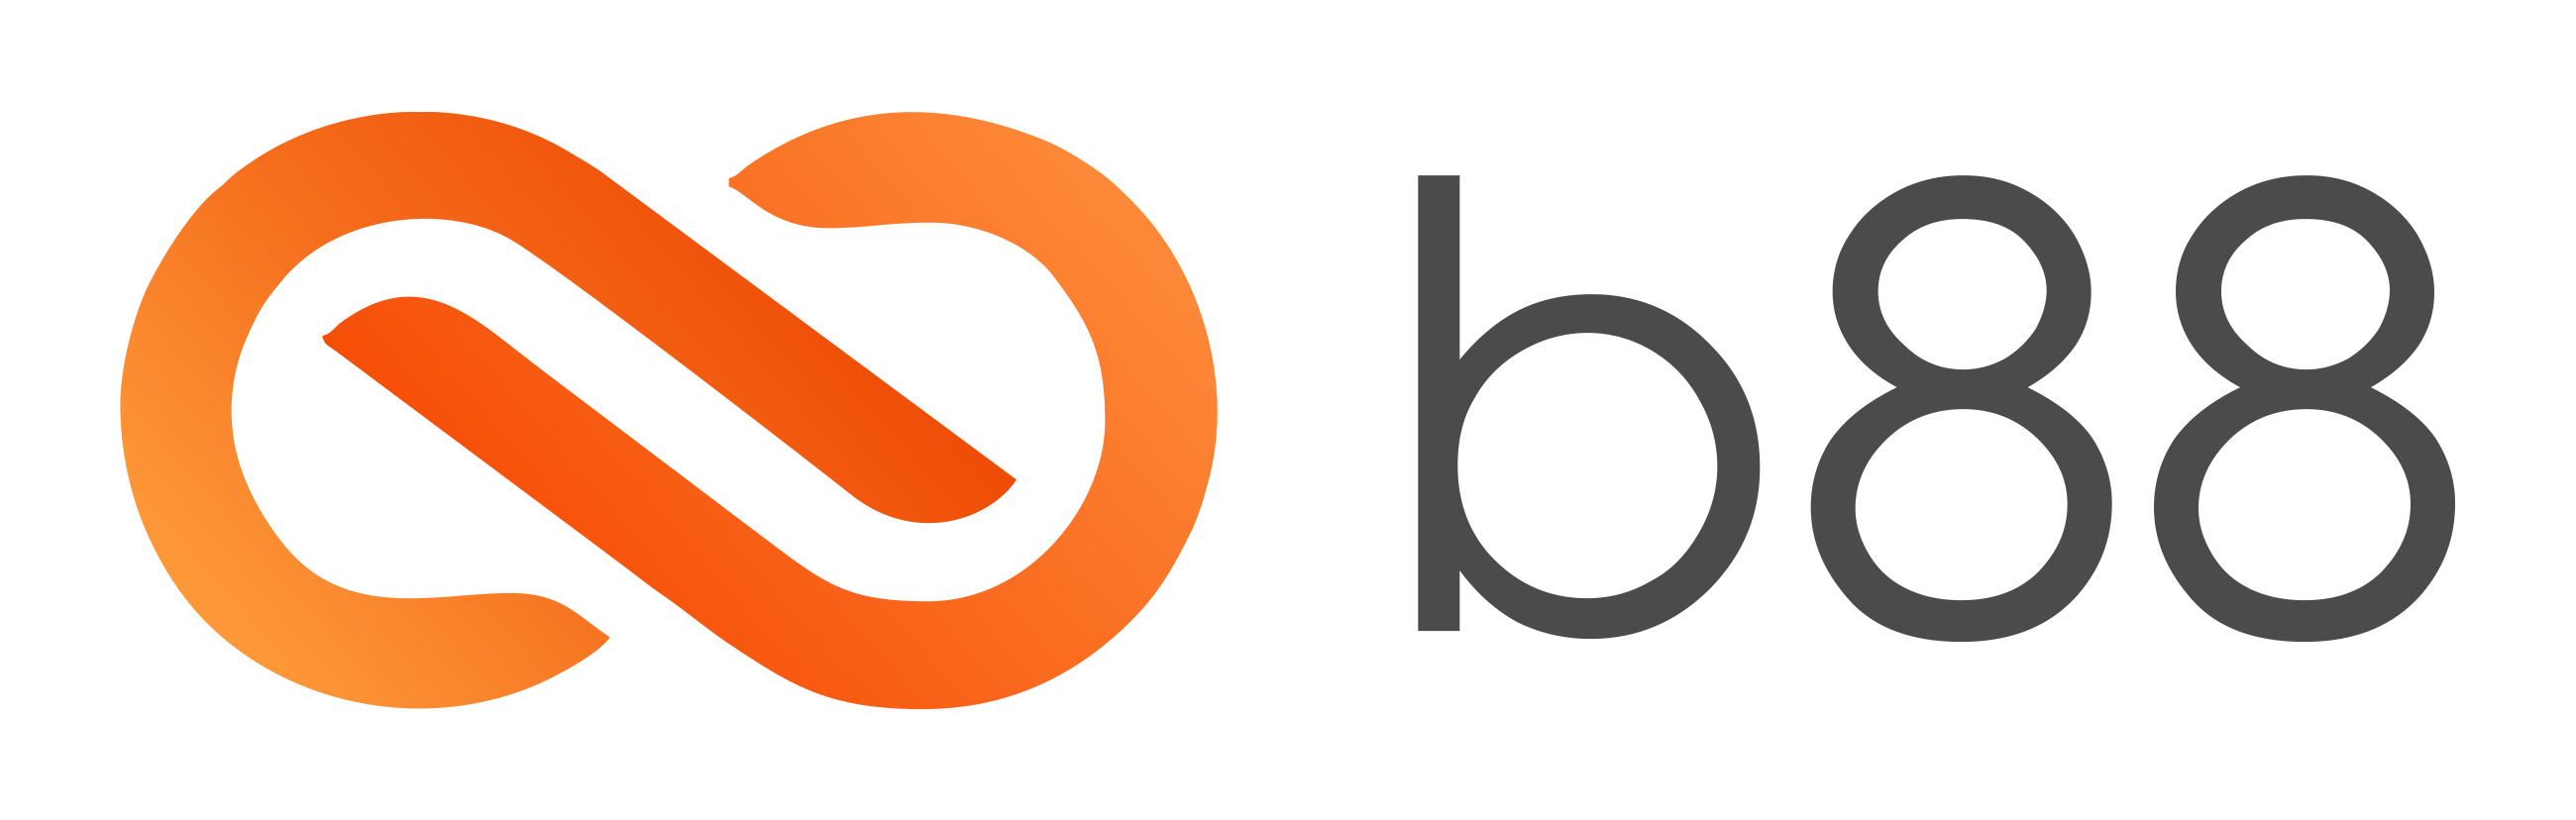 Logotipo da B88